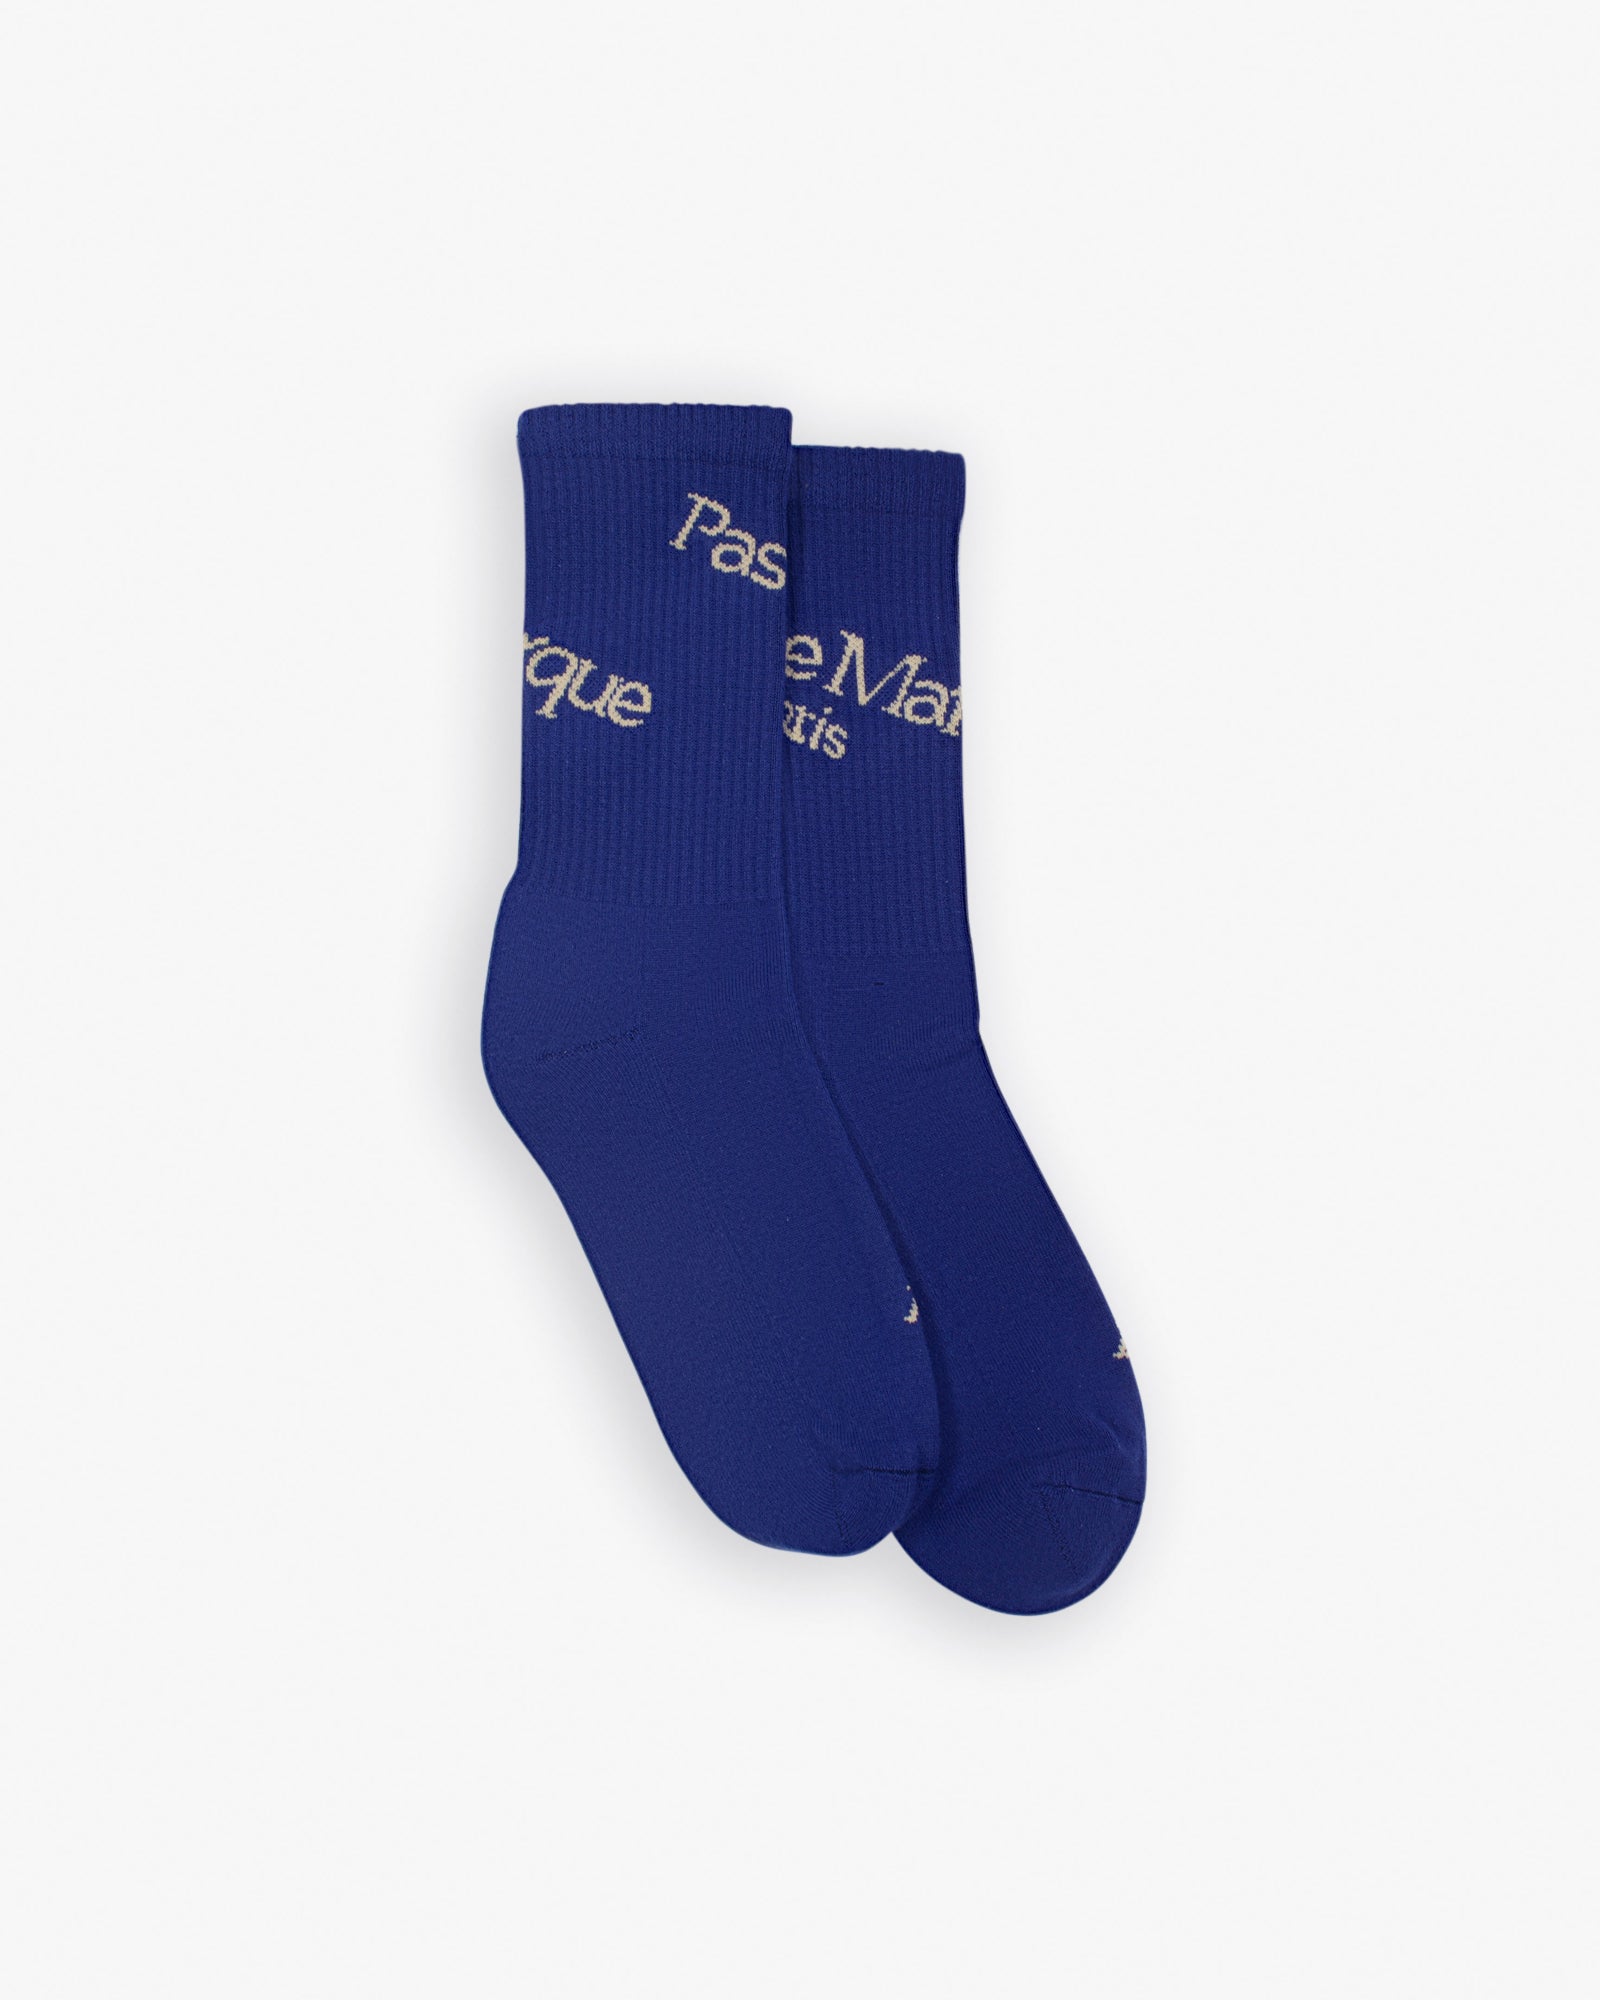 Asymmetric Socks (Purple / Beige)